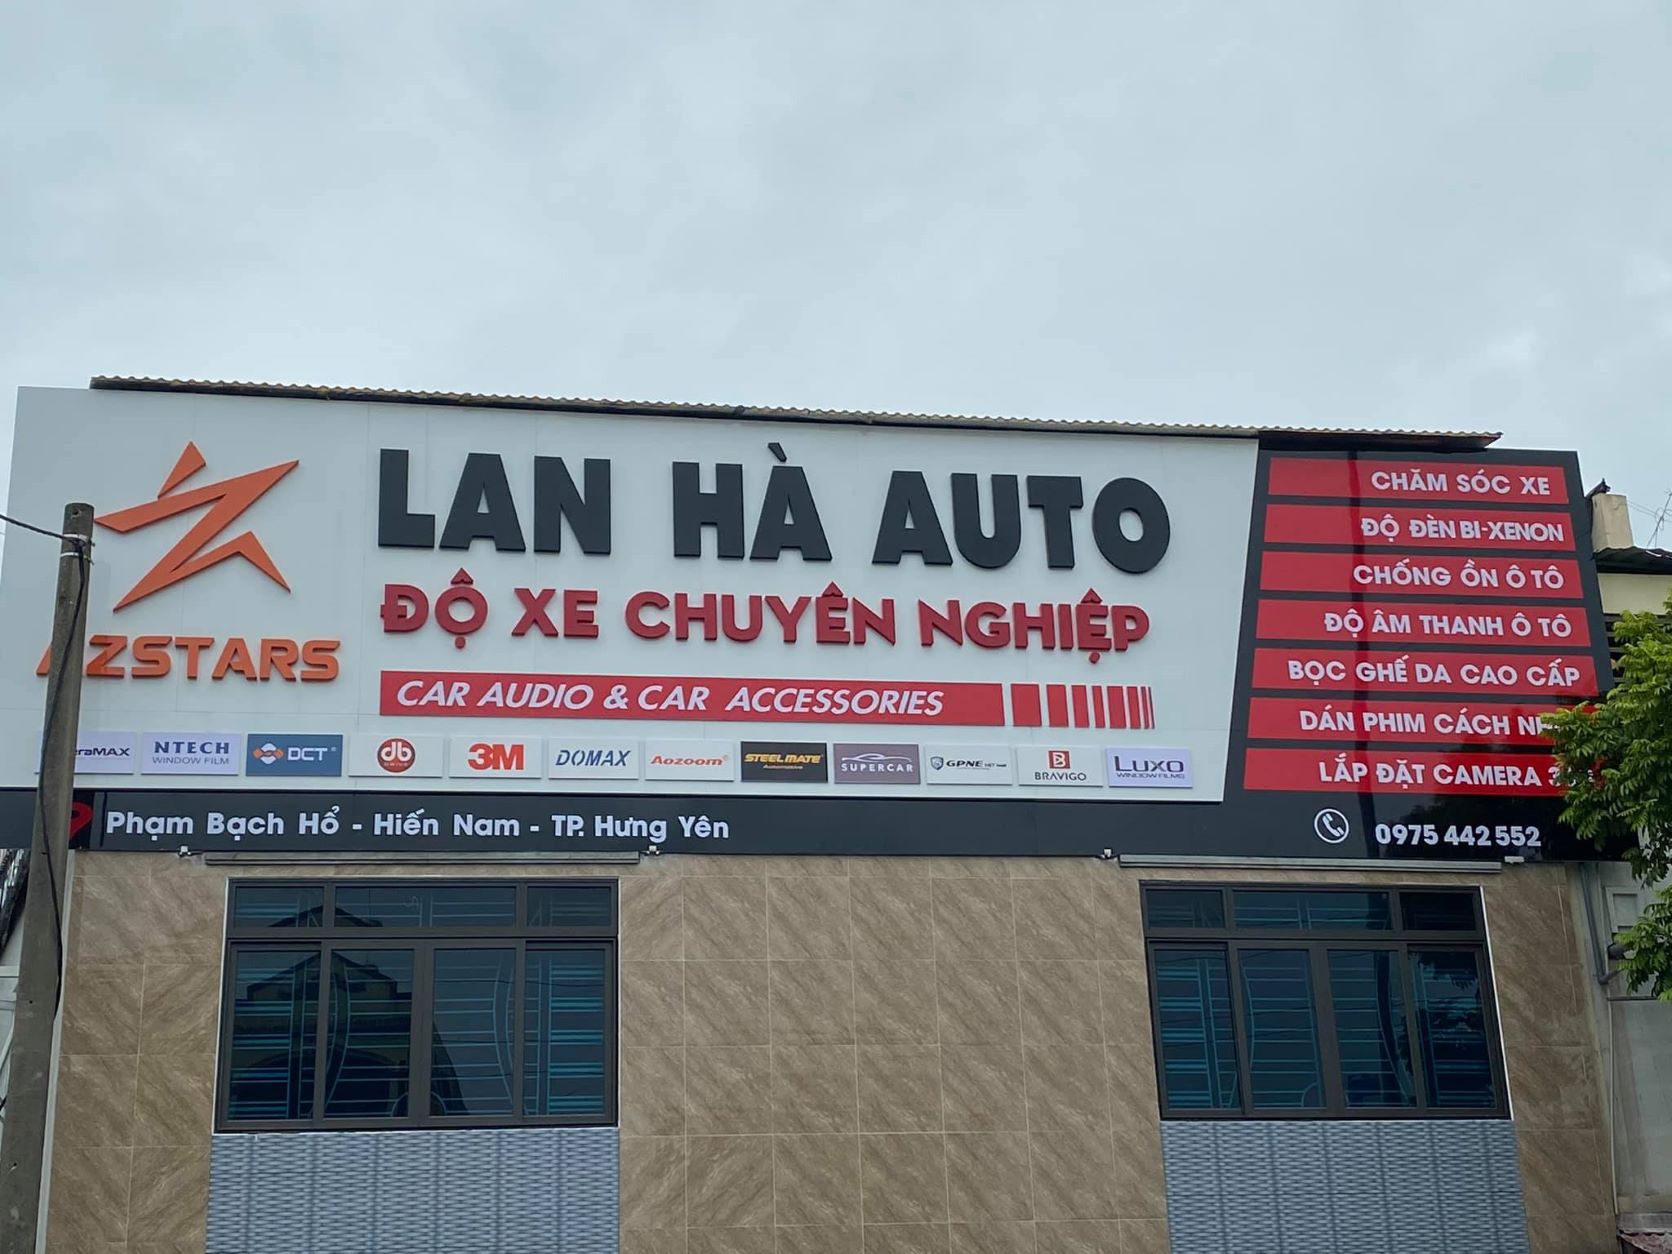  Lan Hà Auto - cơ sở 2